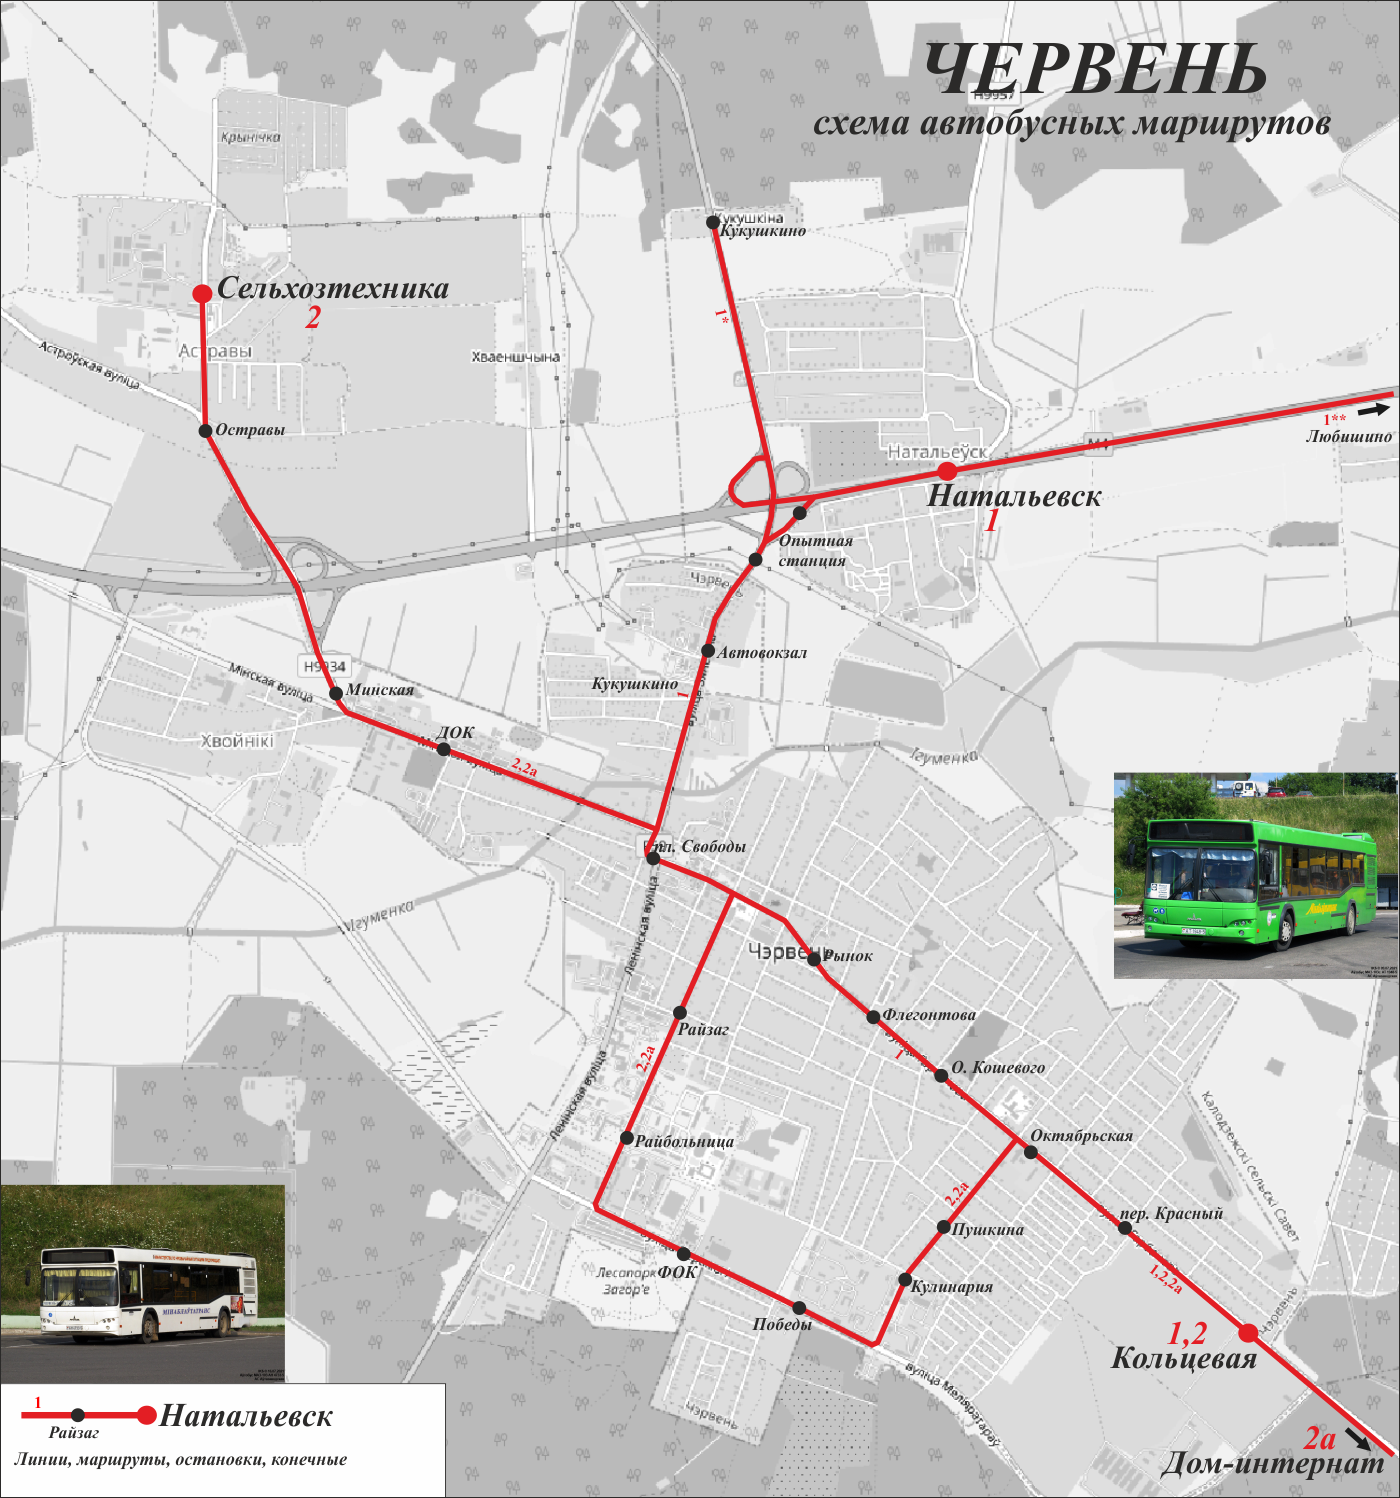 Cherven — Maps; Maps routes